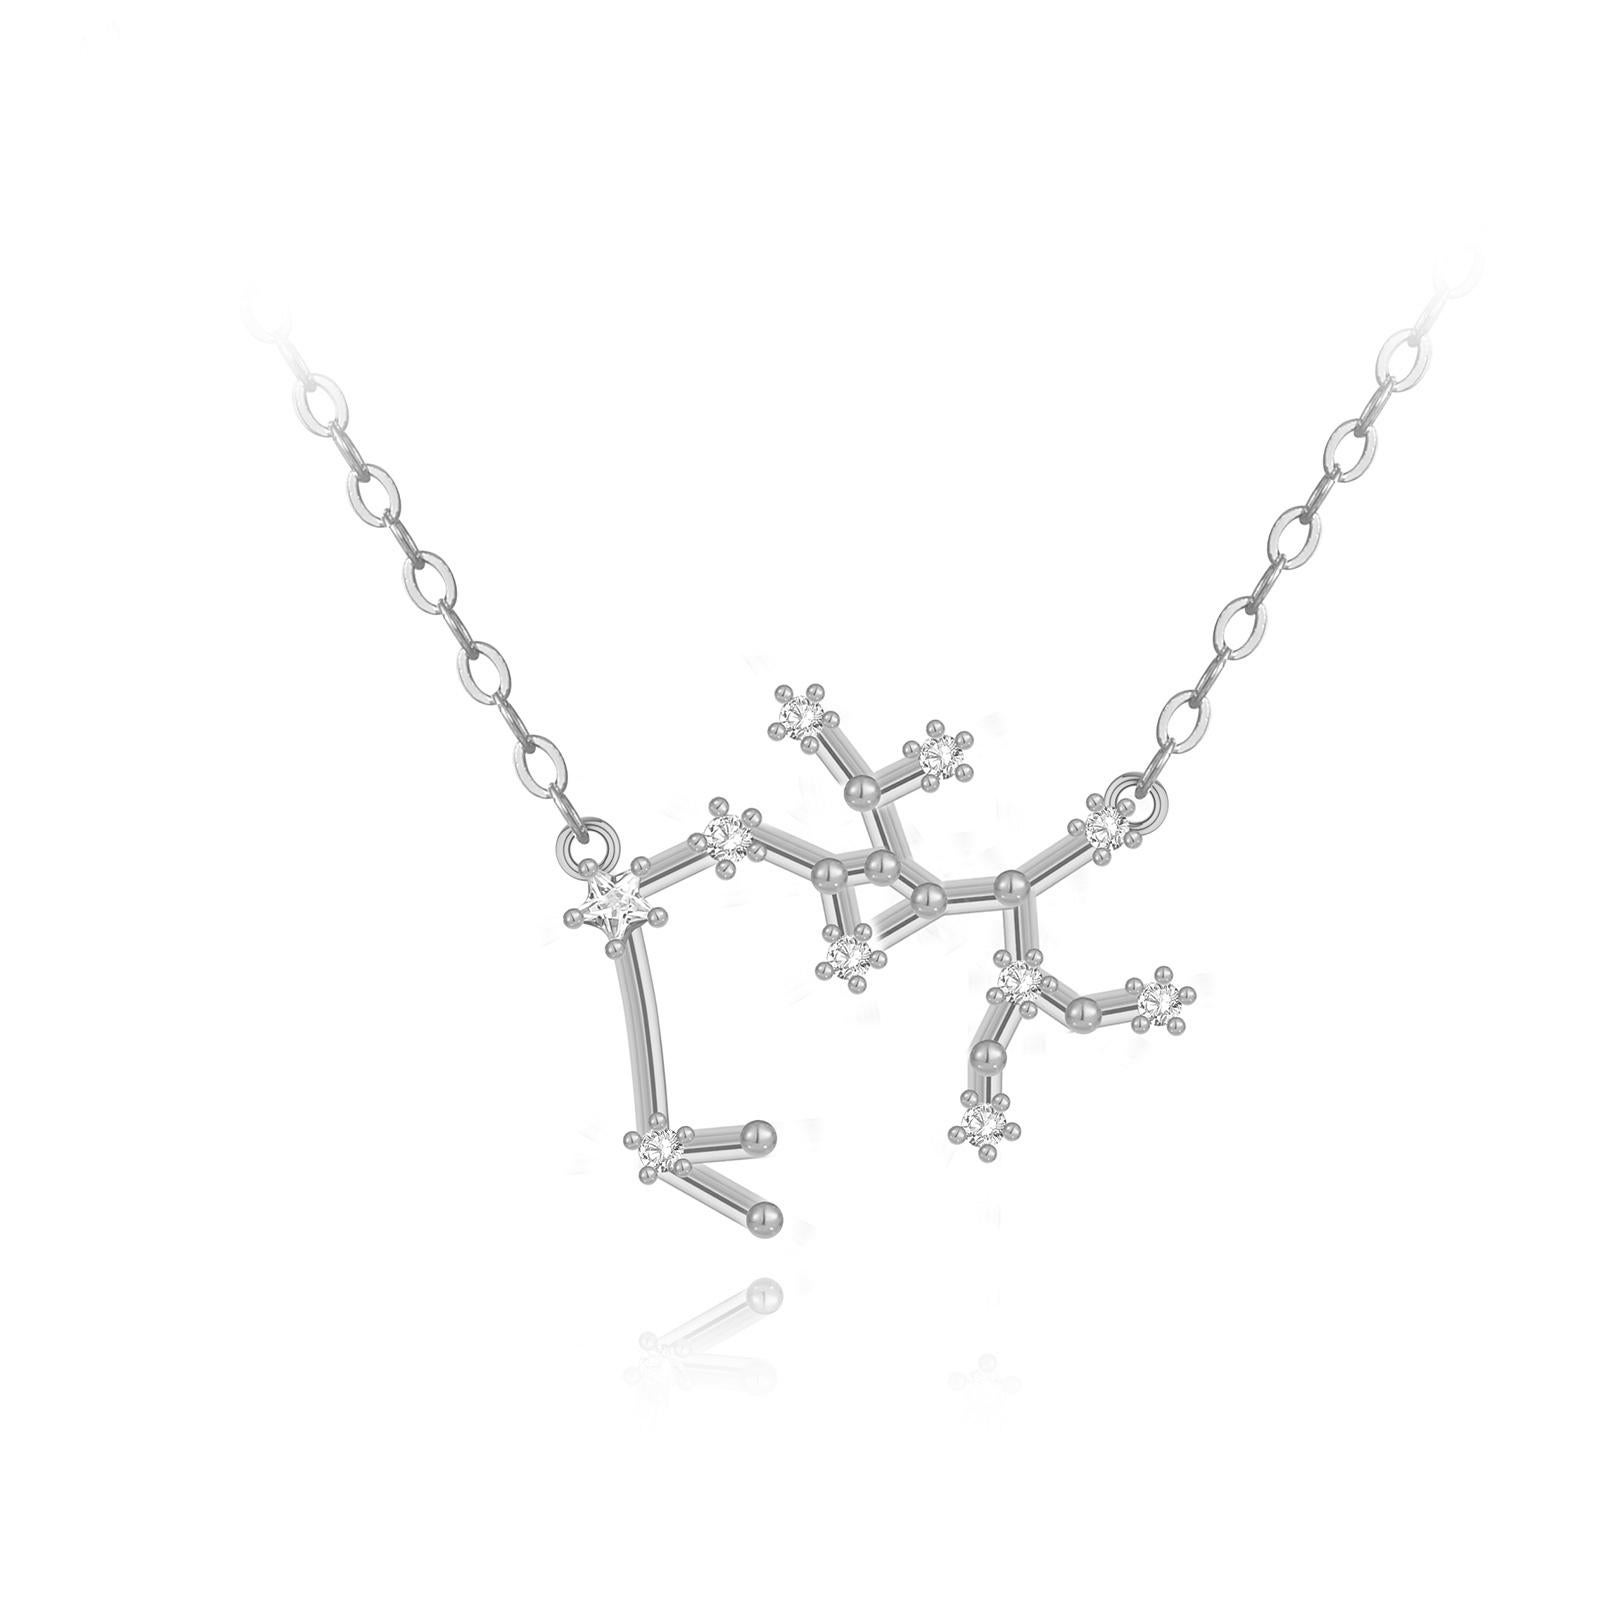 sagittarius constellation necklace